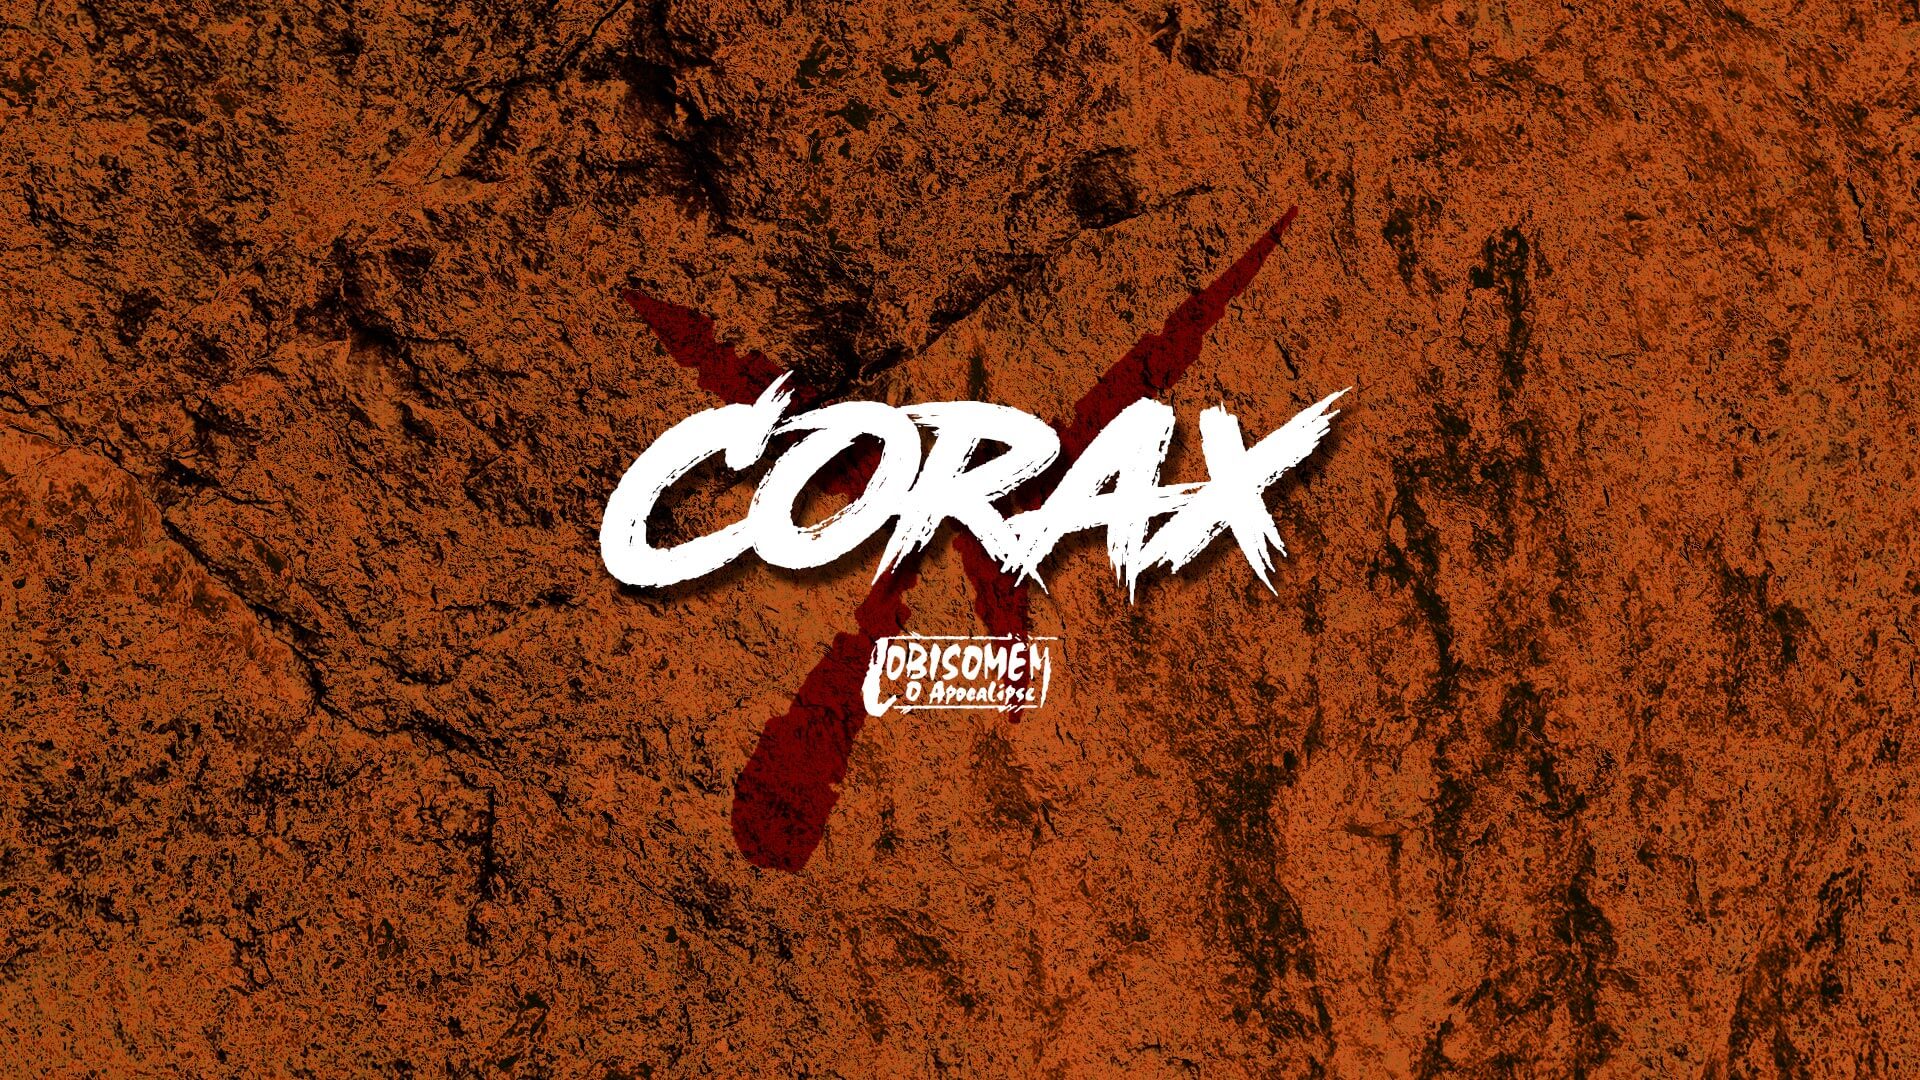 Corax – Feras de Lobisomem O Apocalipse